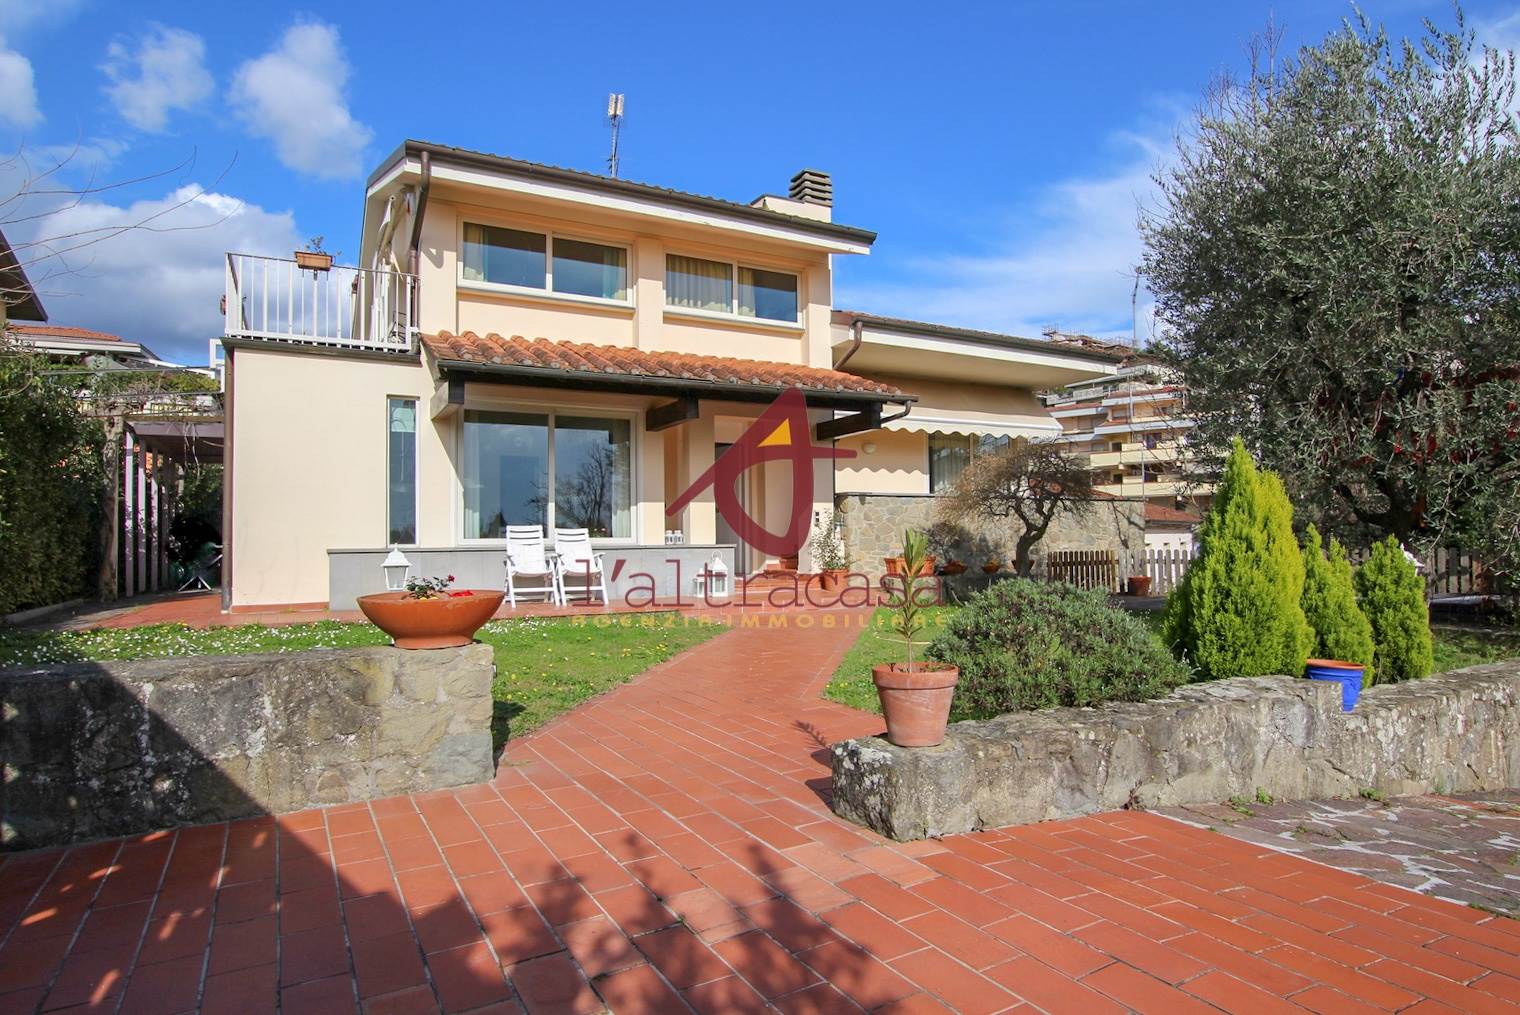 Villa in Vendita a Montecatini-Terme